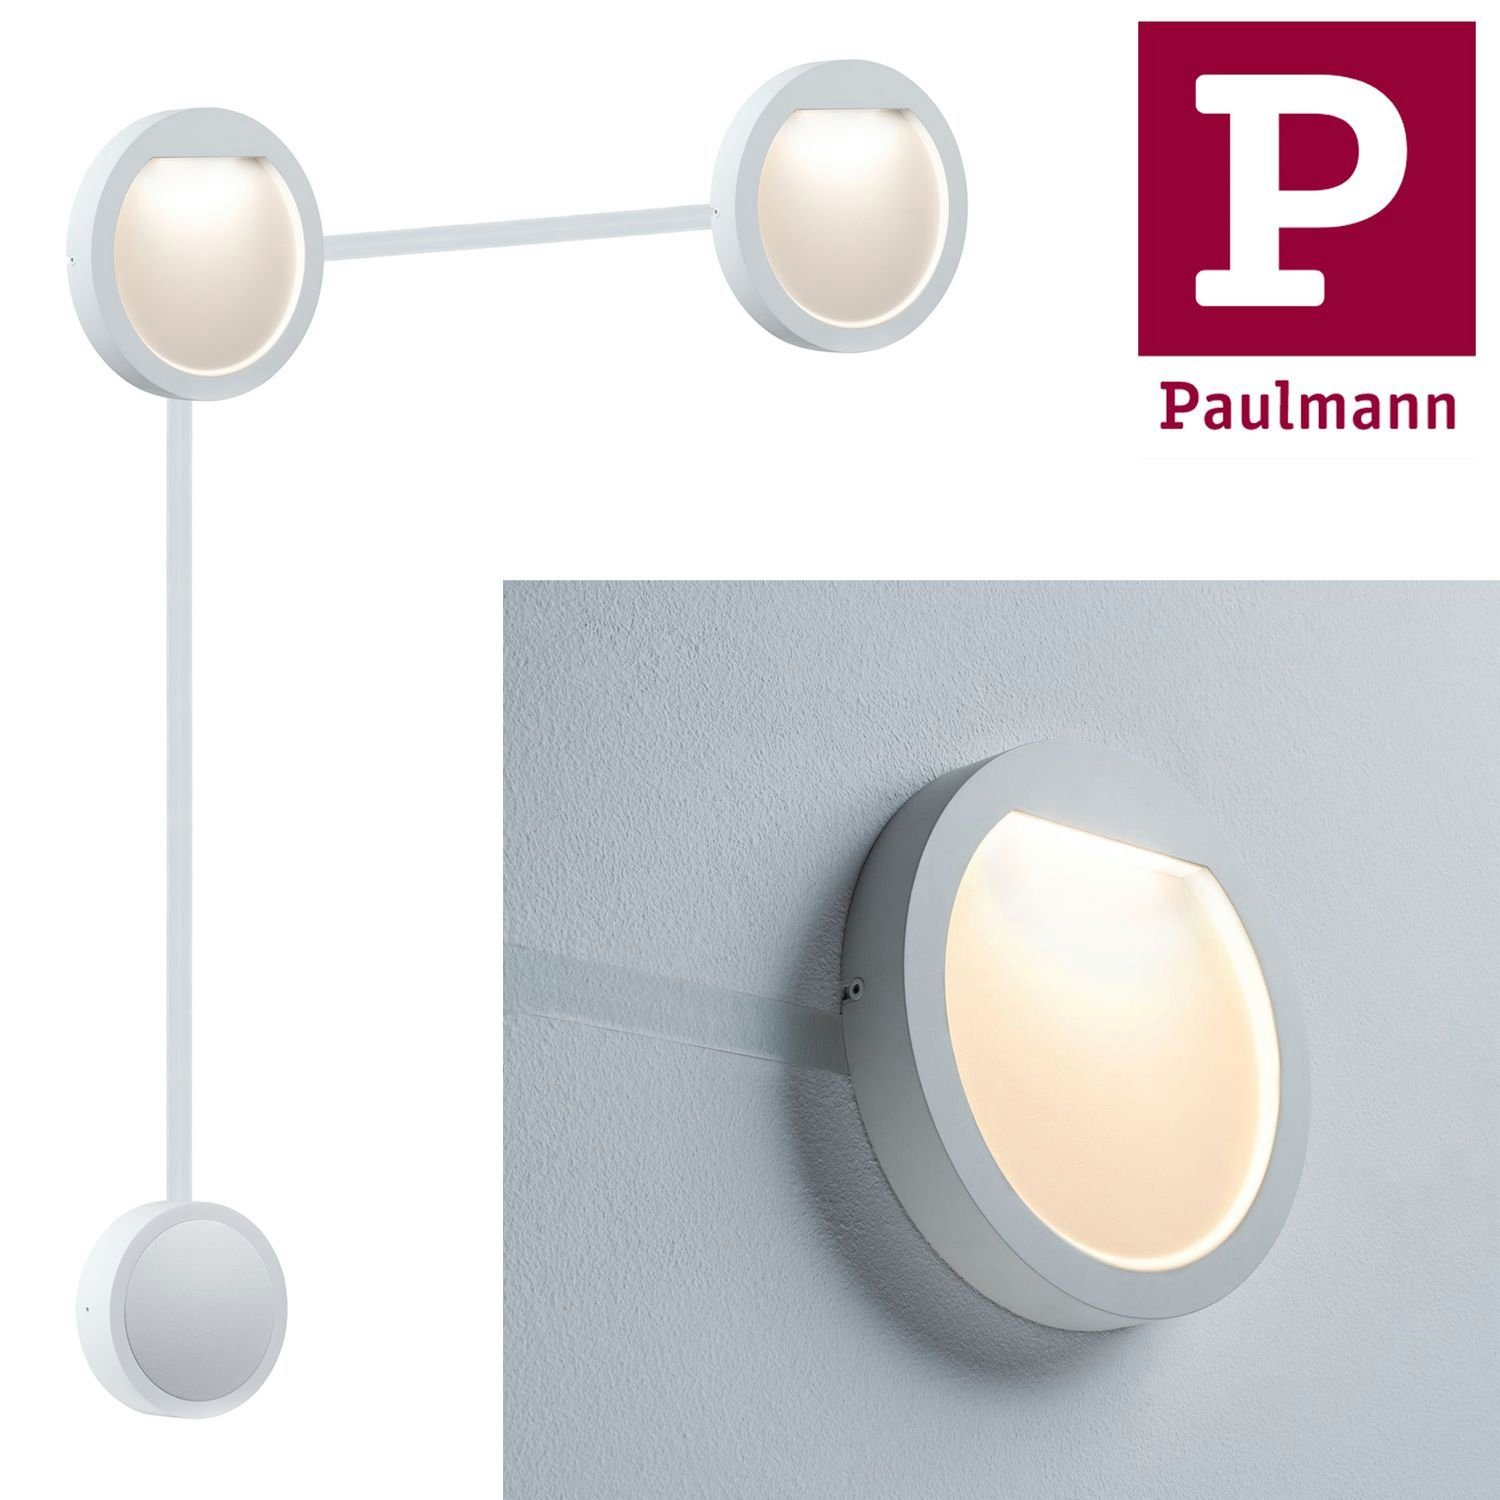 Paulmann Einbauleuchte Paulmann Flow Set 160mm Weiß LED Special 160mm Special Weiß matt, Paulmann LED Einbauleuchte 2x2,3W 2x2,3W Einbauleuchte Flow matt Set